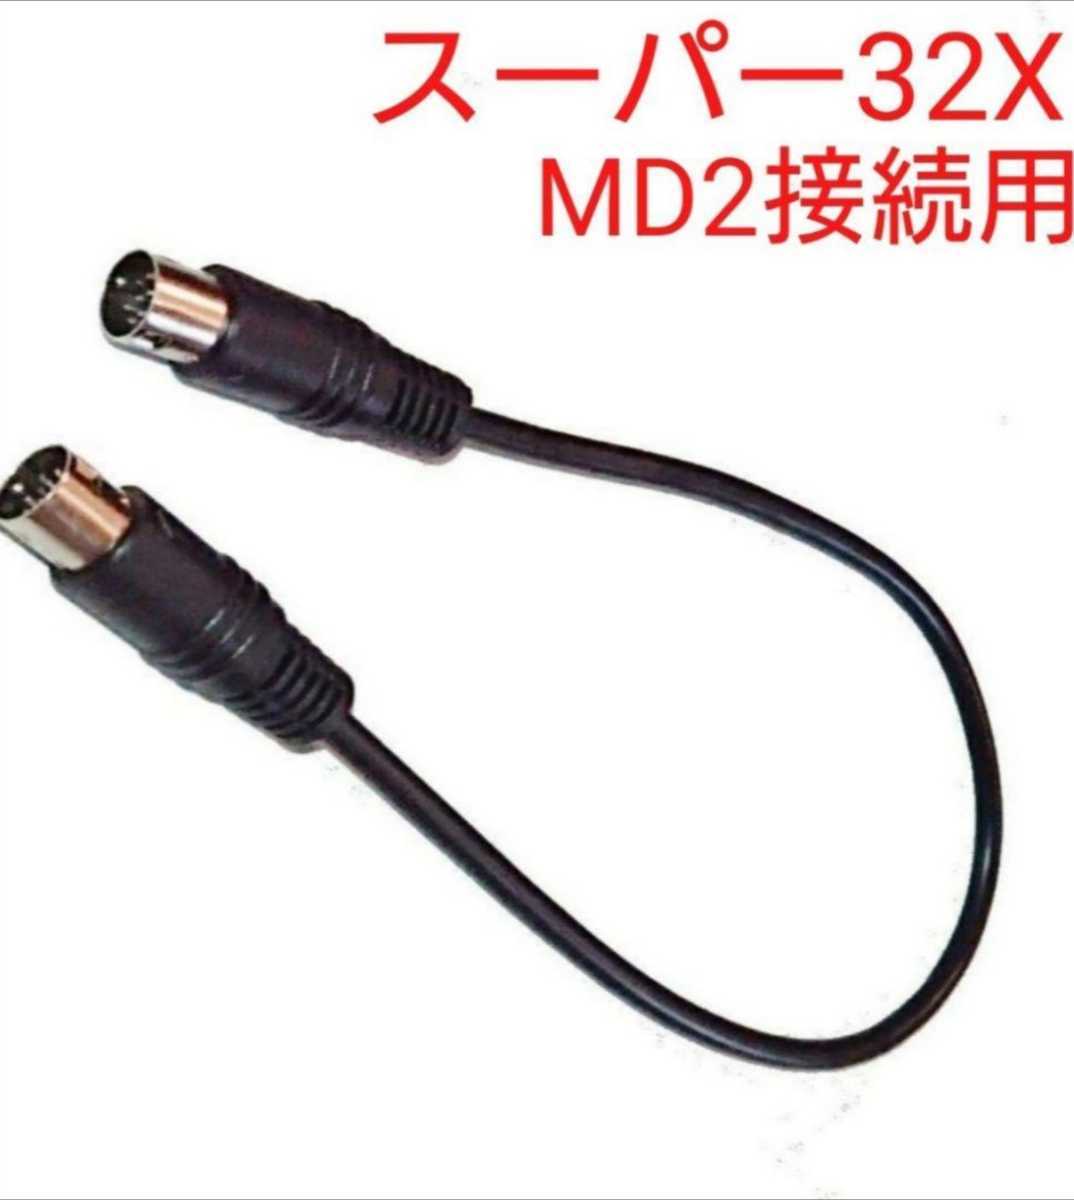 送料無料 スーパー32X MD2用リンクケーブル 接続ケーブル メガドライブ2用 ステレオ音声出力